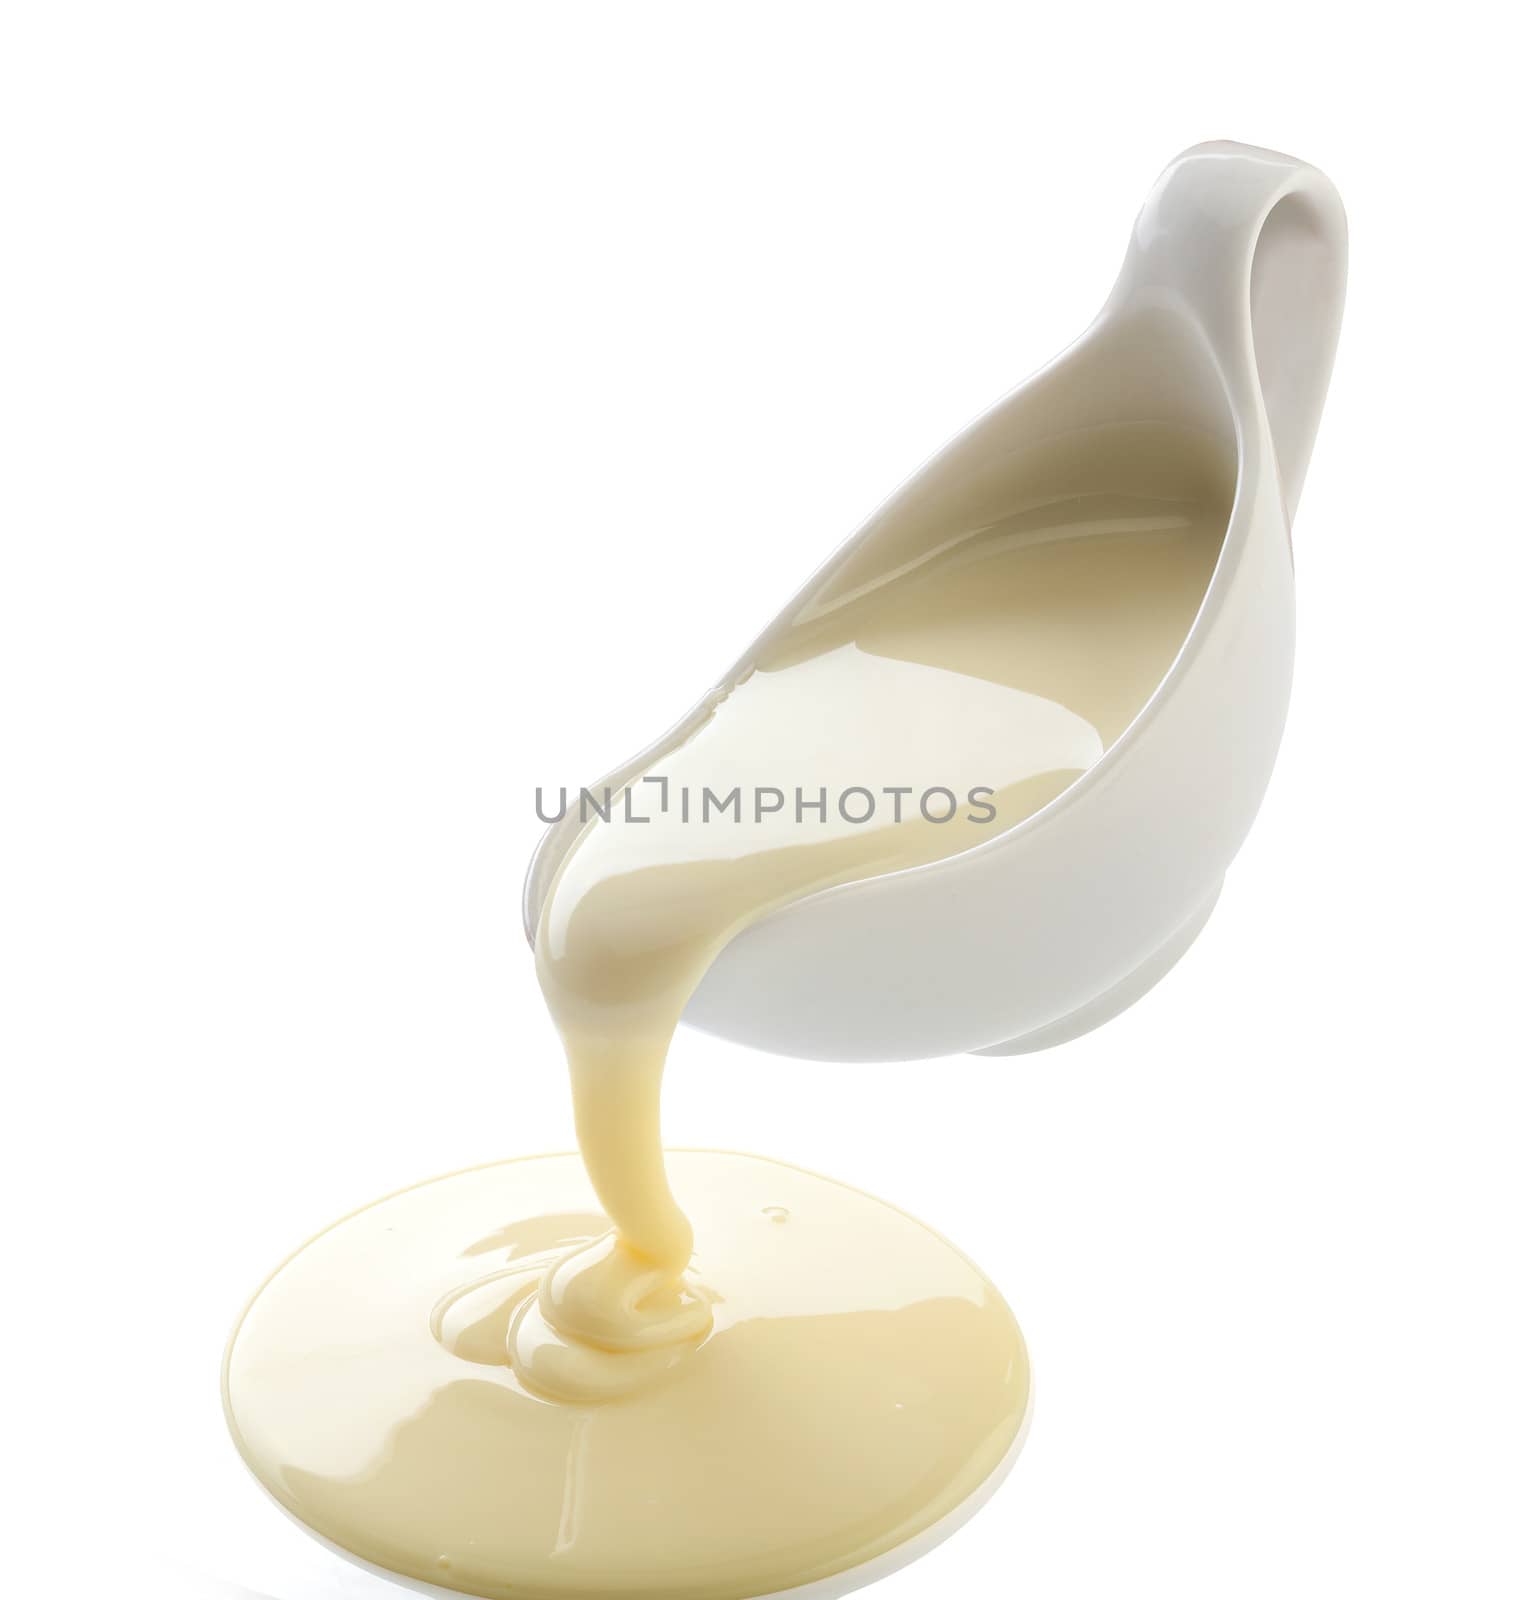 Condensed milk by Angorius